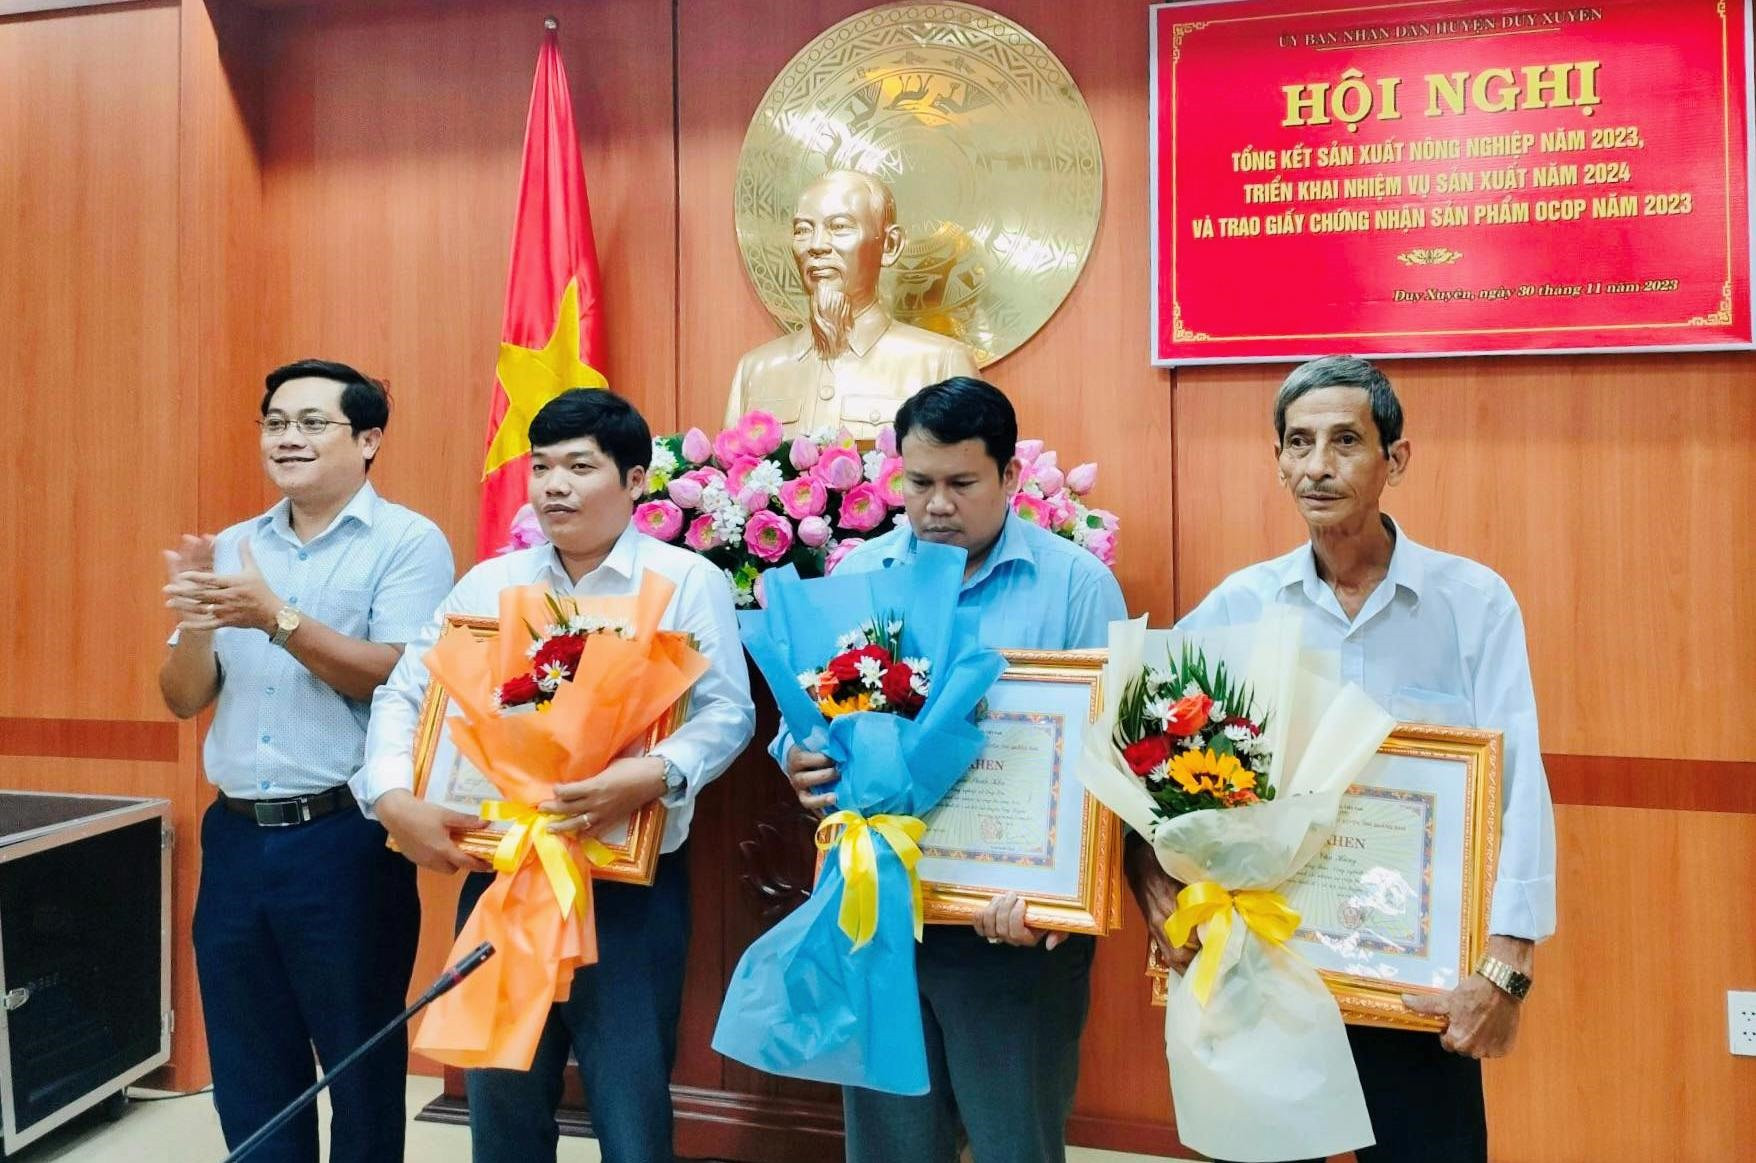 UBND huyện Duy Xuyên trao giấy chứng nhận sản phẩm OCOP 3 sao năm 2023 cho 5 sản phẩm của 5 chủ thể; khen thưởng 3 tập thể, 3 cá nhân hoàn thành xuất sắc nhiệm vụ công tác năm 2023.